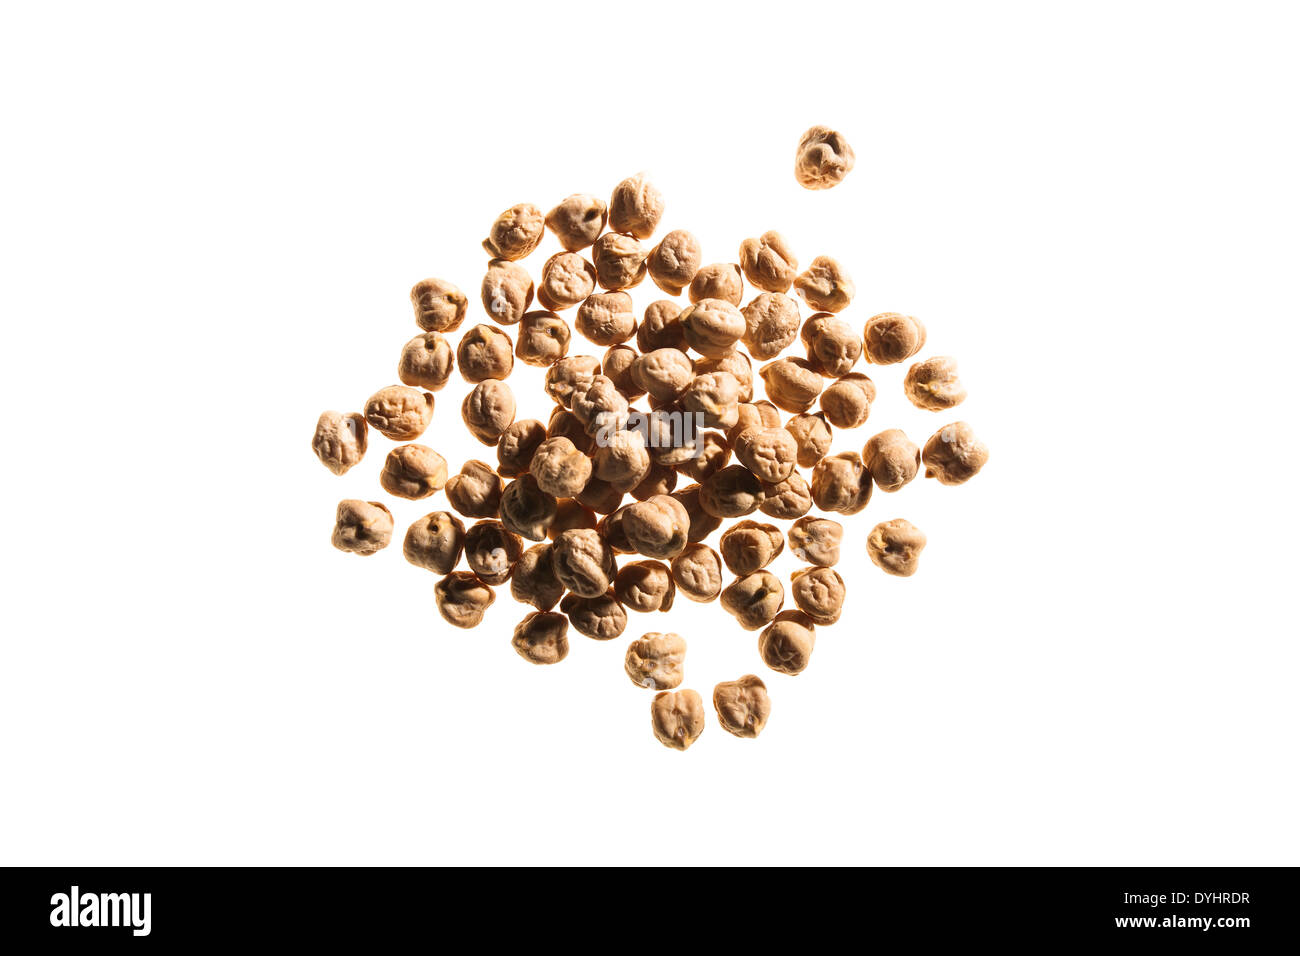 Pile of Garbanzo Beans on White Background Stock Photo